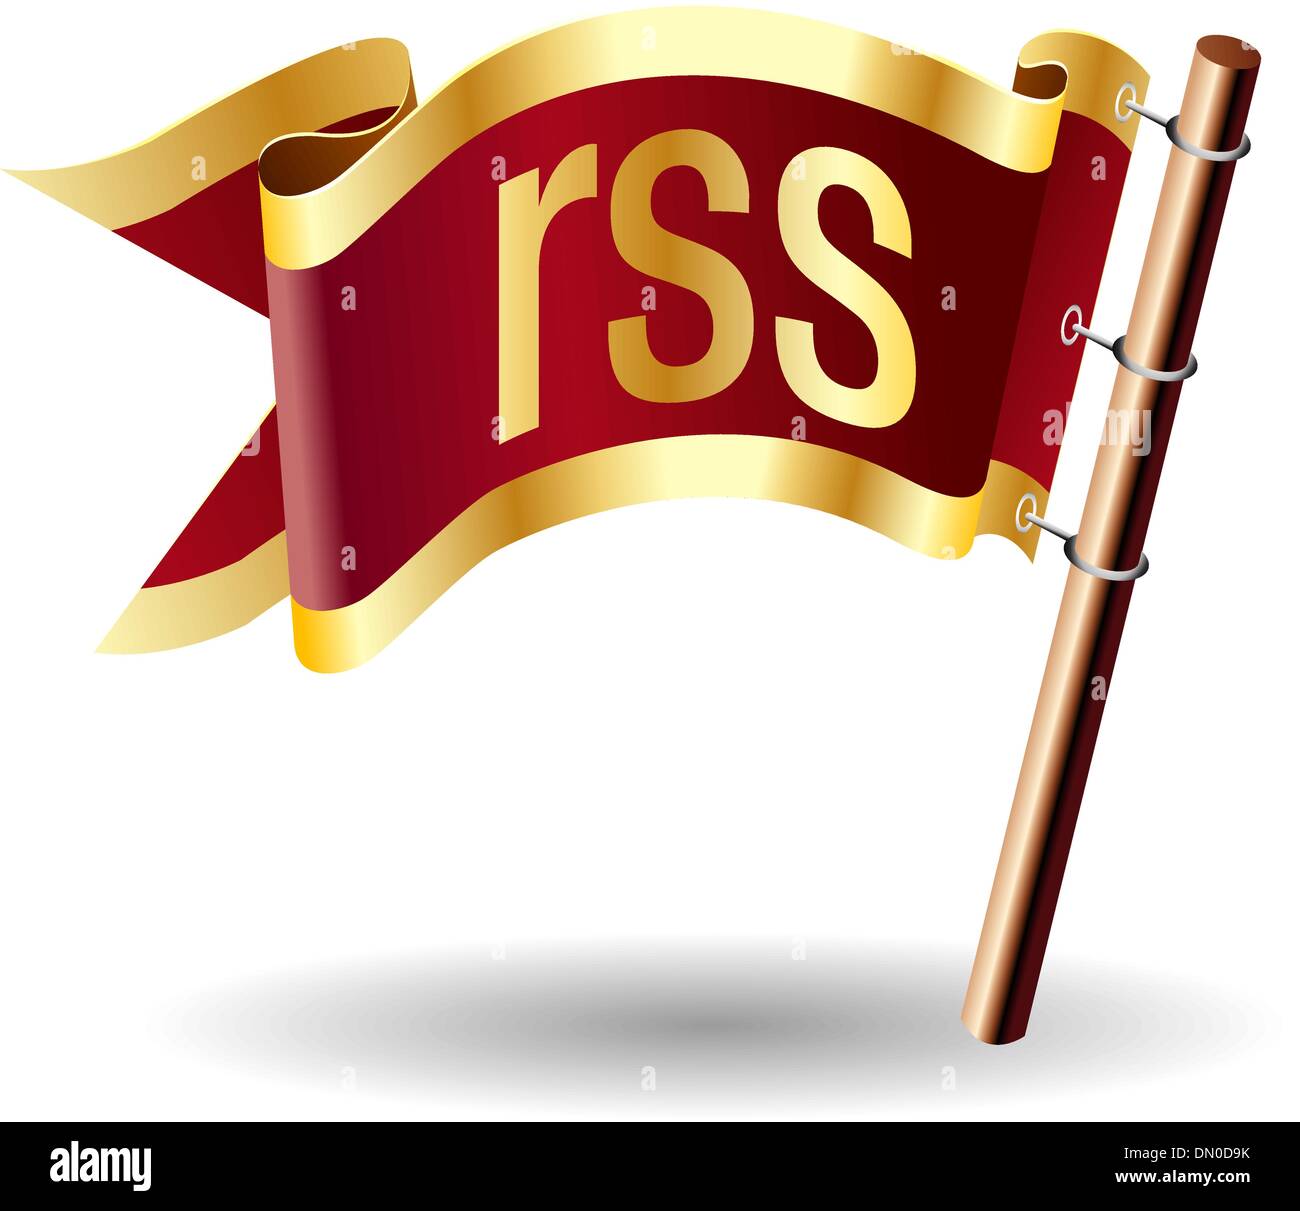 Feed RSS royal bandiera Illustrazione Vettoriale